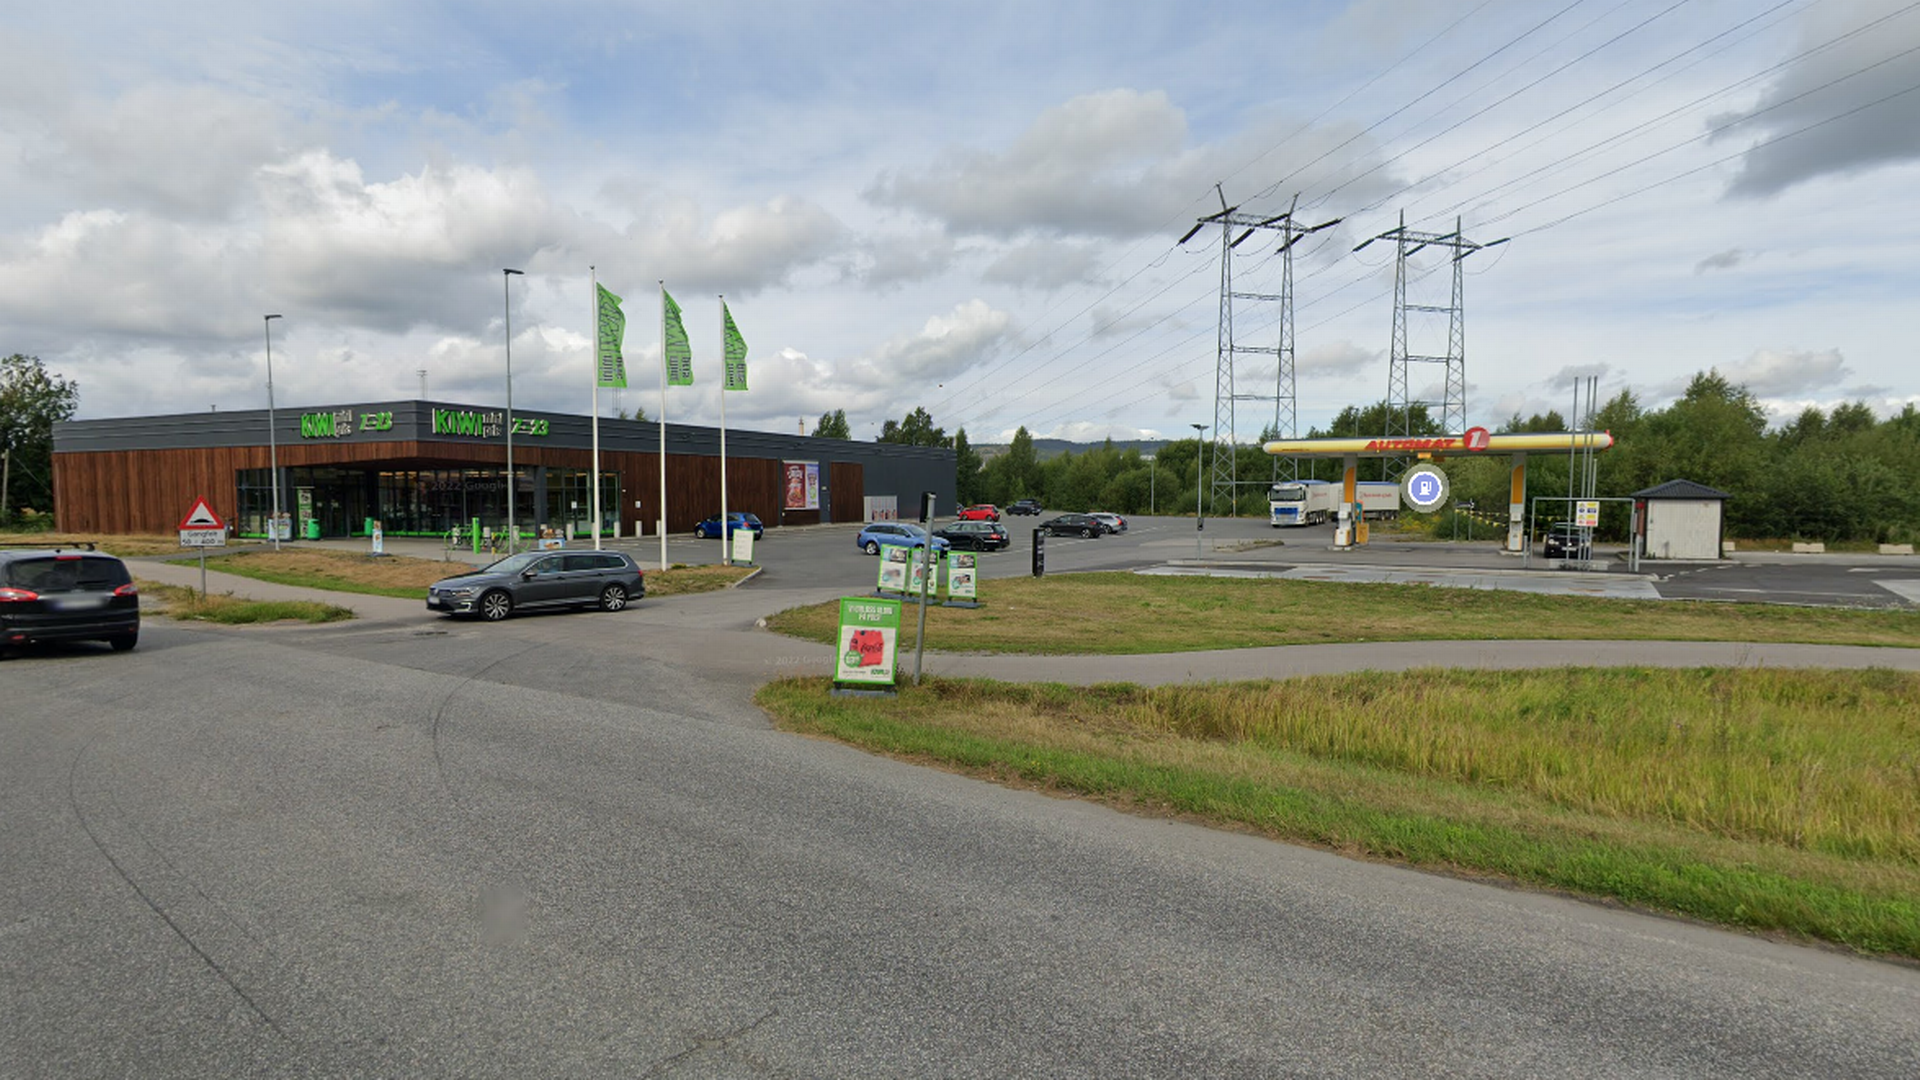 Her vil Grenmar Eiendomsforvaltning, datterselskap av God Driv, ha Europris. | Foto: Google Street View